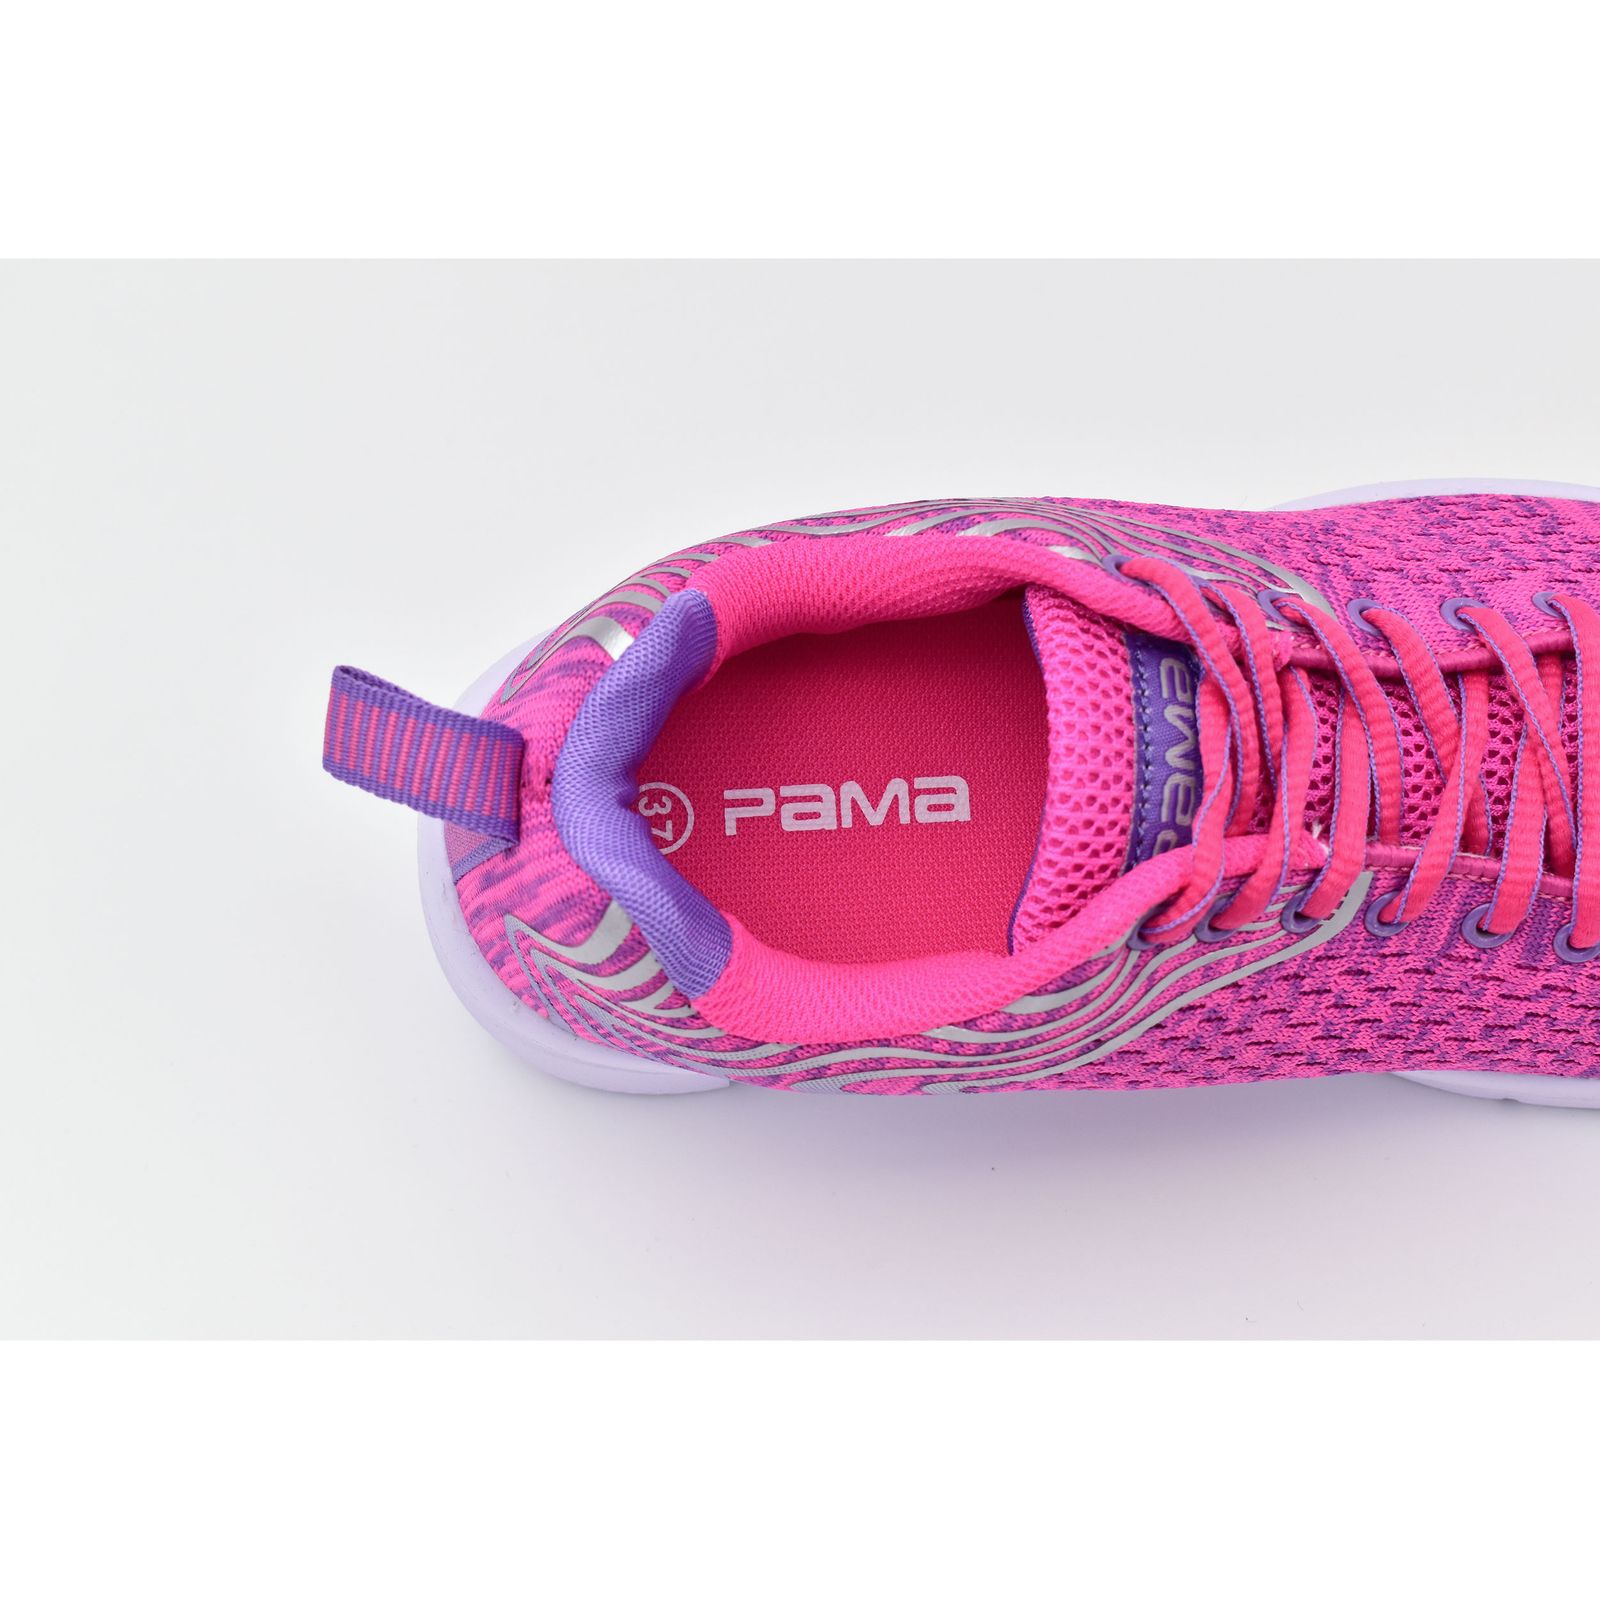 کفش مخصوص پیاده روی زنانه پاما مدل فرازپا کد G1005 -  - 9